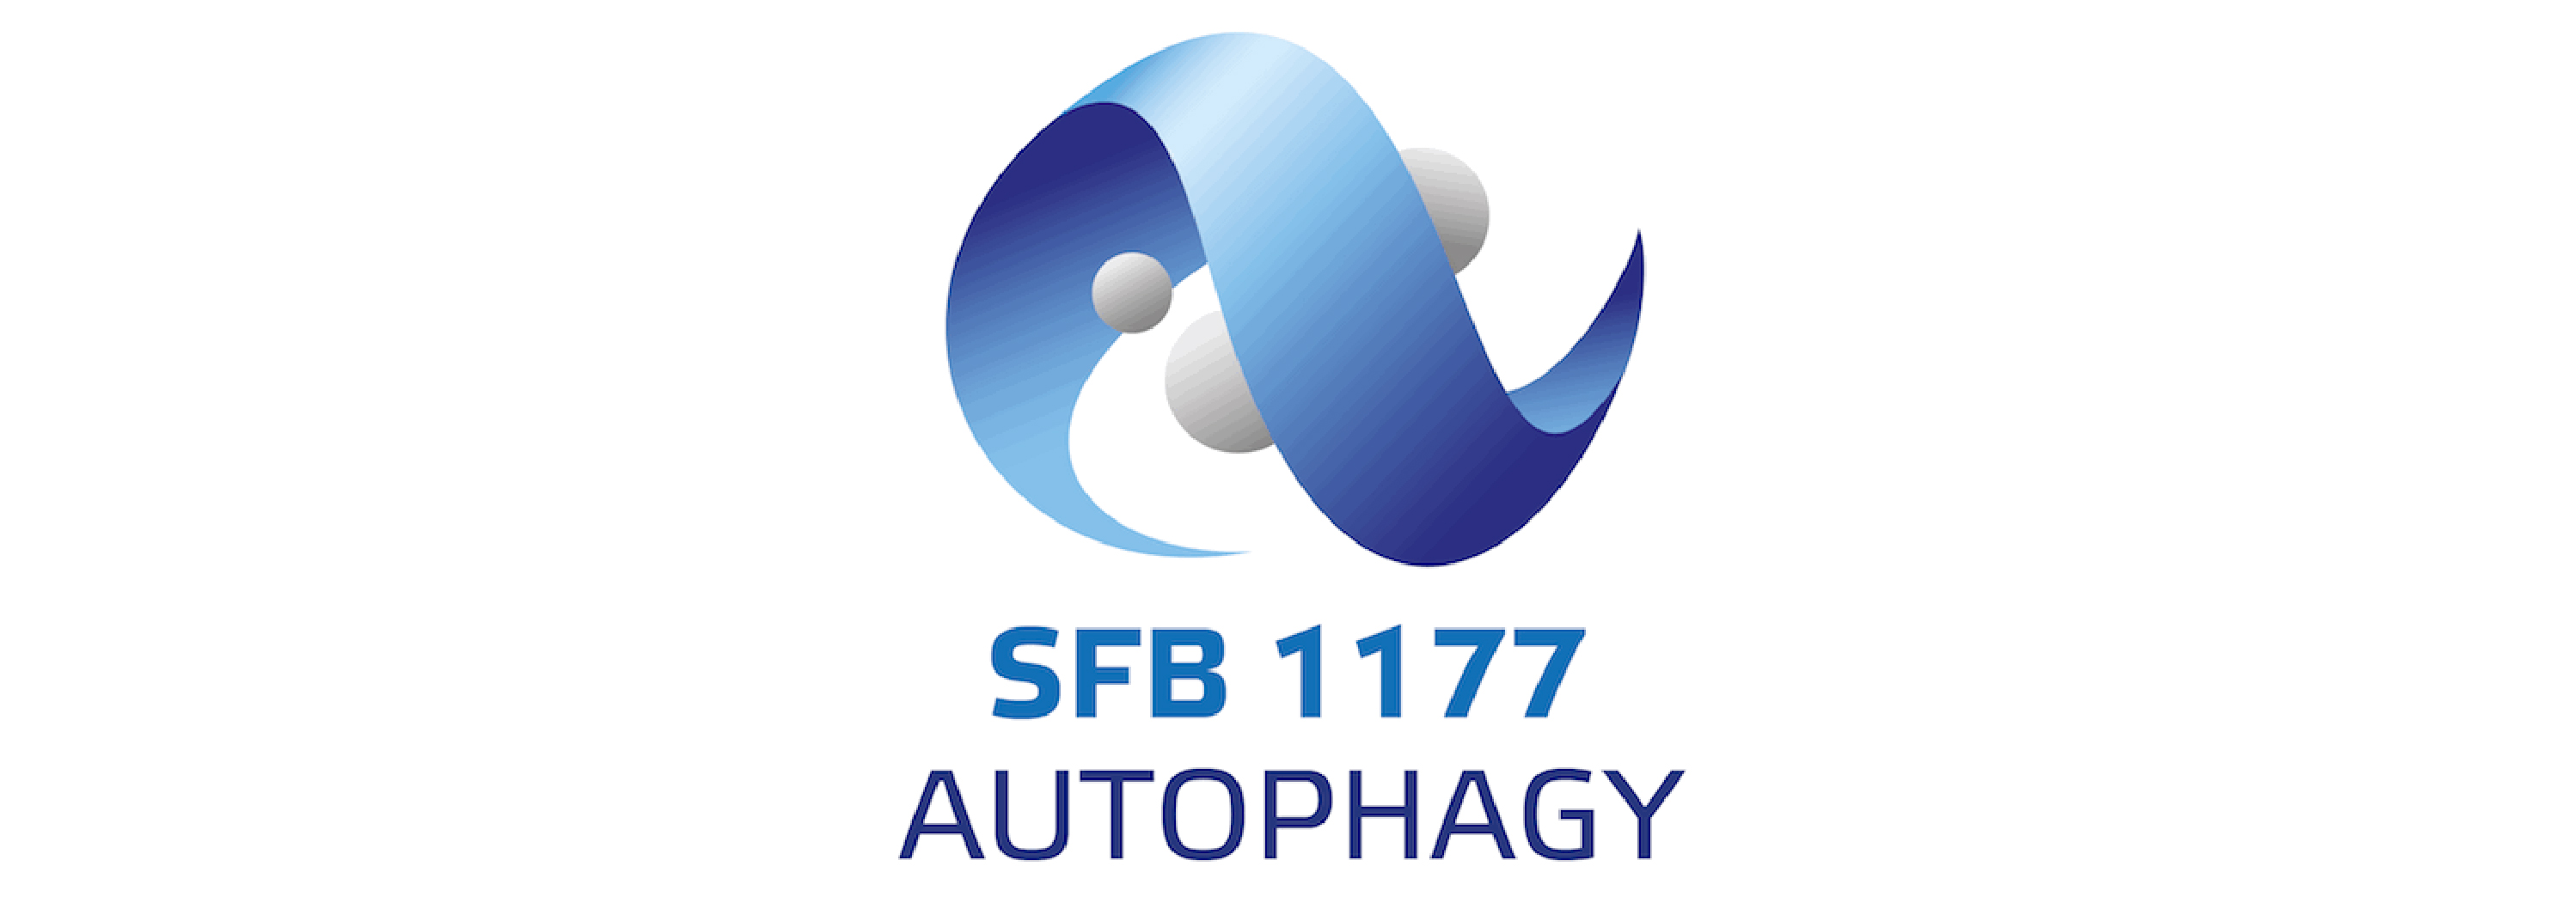 Icon Molekulare und funktionale Charakterisierung der selektiven Autophagie (SFB 1177)